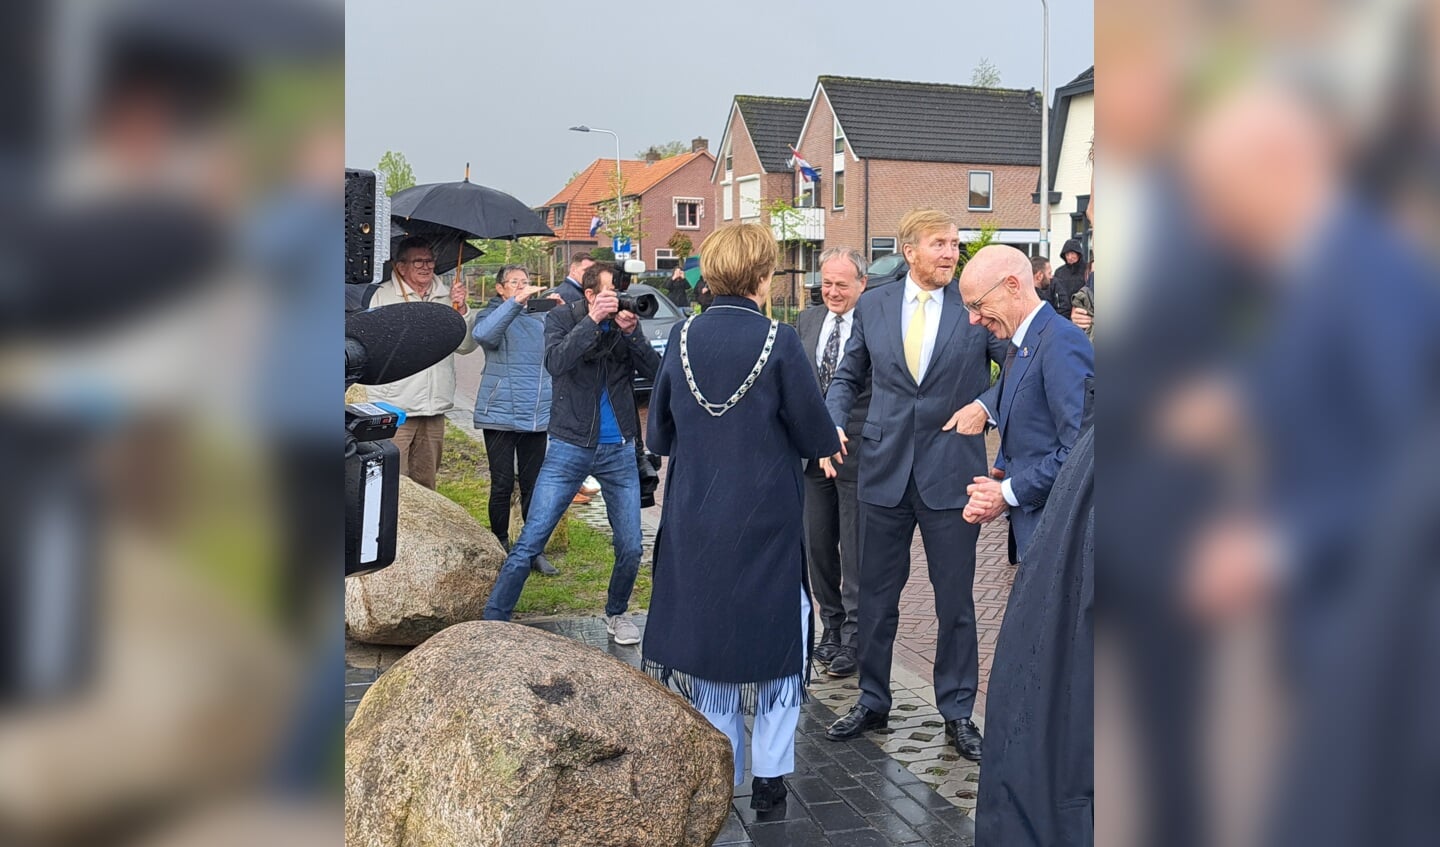 De koning kijkt nog even achterom naar het publiek voordat hij burgemeester Bronsvoort de hand schudt. Foto: Kyra Broshuis